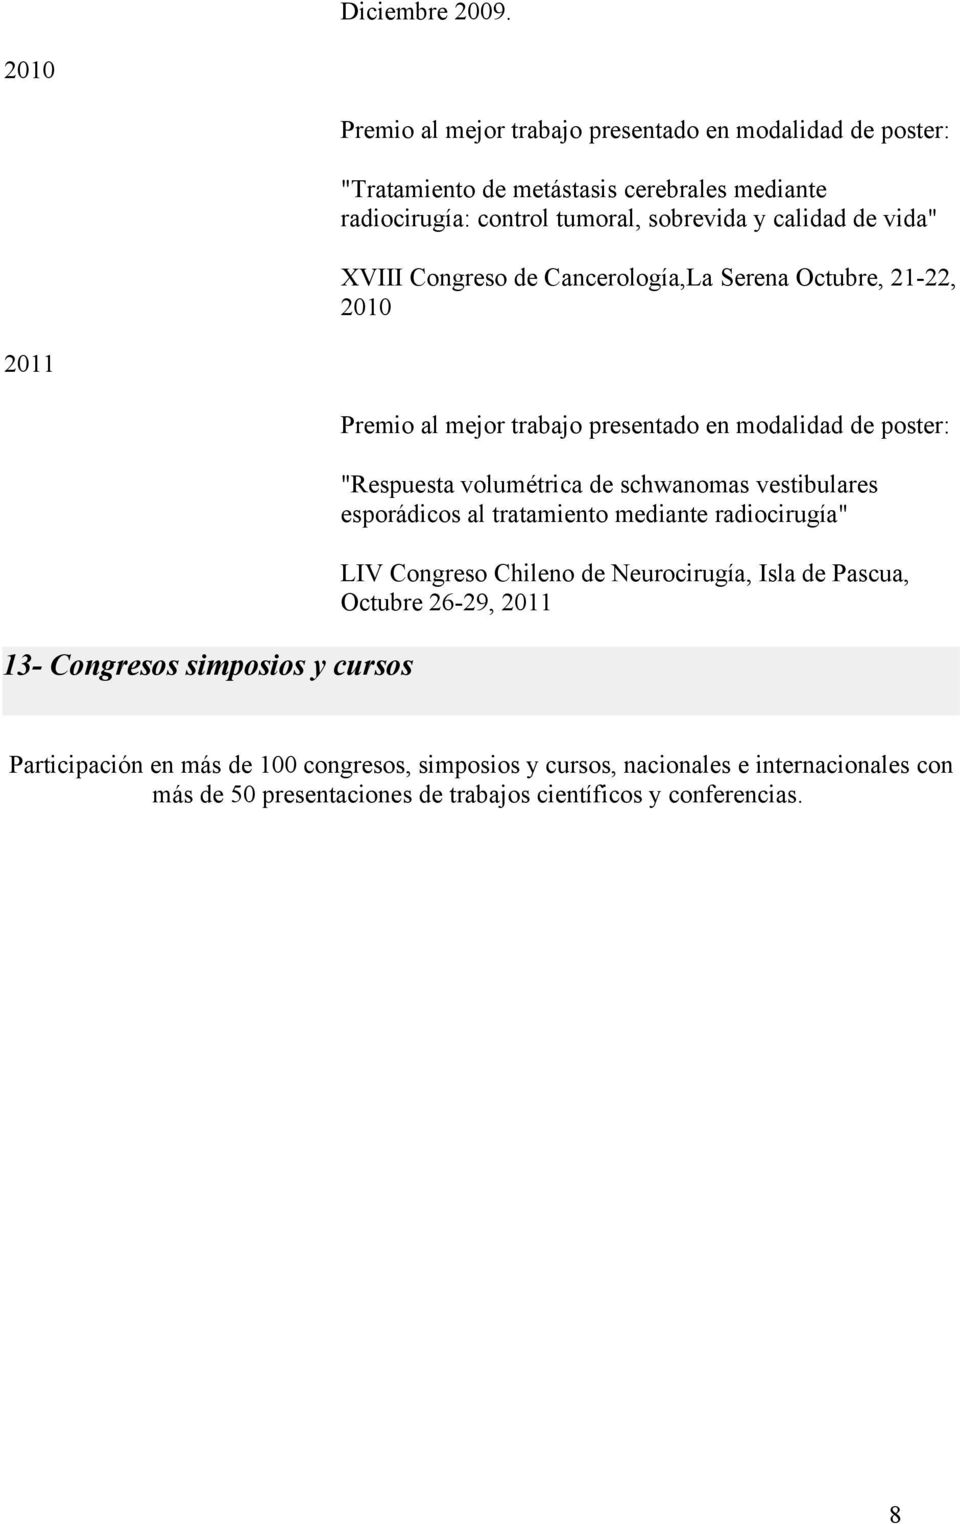 vida" XVIII Congreso de Cancerología,La Serena Octubre, 21-22, 2010 2011 13- Congresos simposios y cursos Premio al mejor trabajo presentado en modalidad de poster: